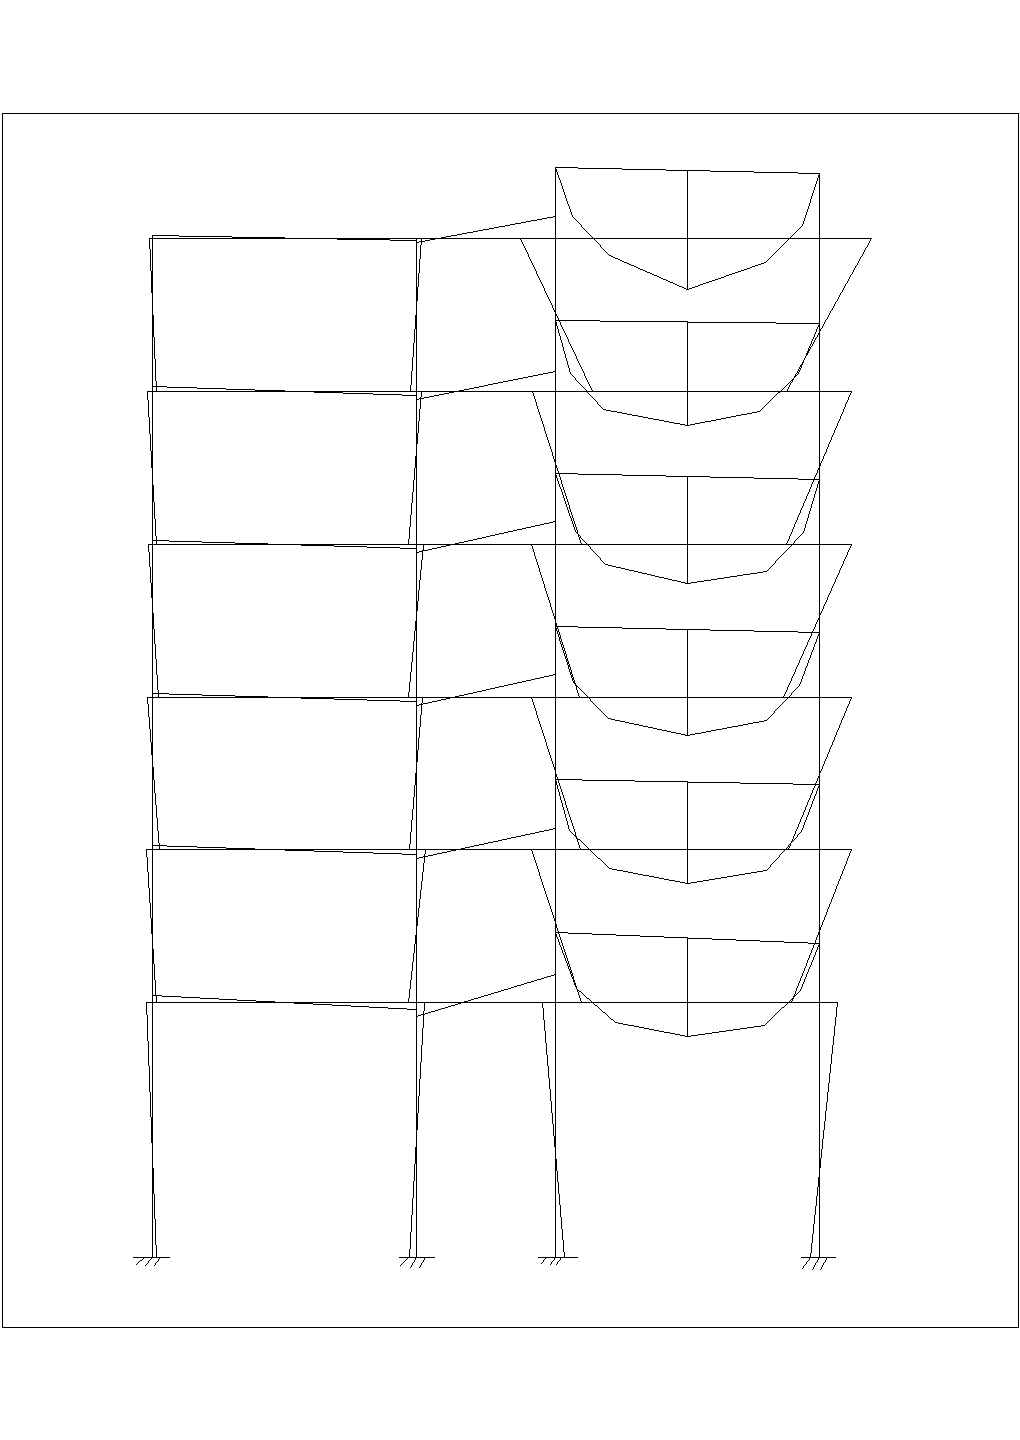 某活荷载作用在B-C轴间的V图CAD完整设计图